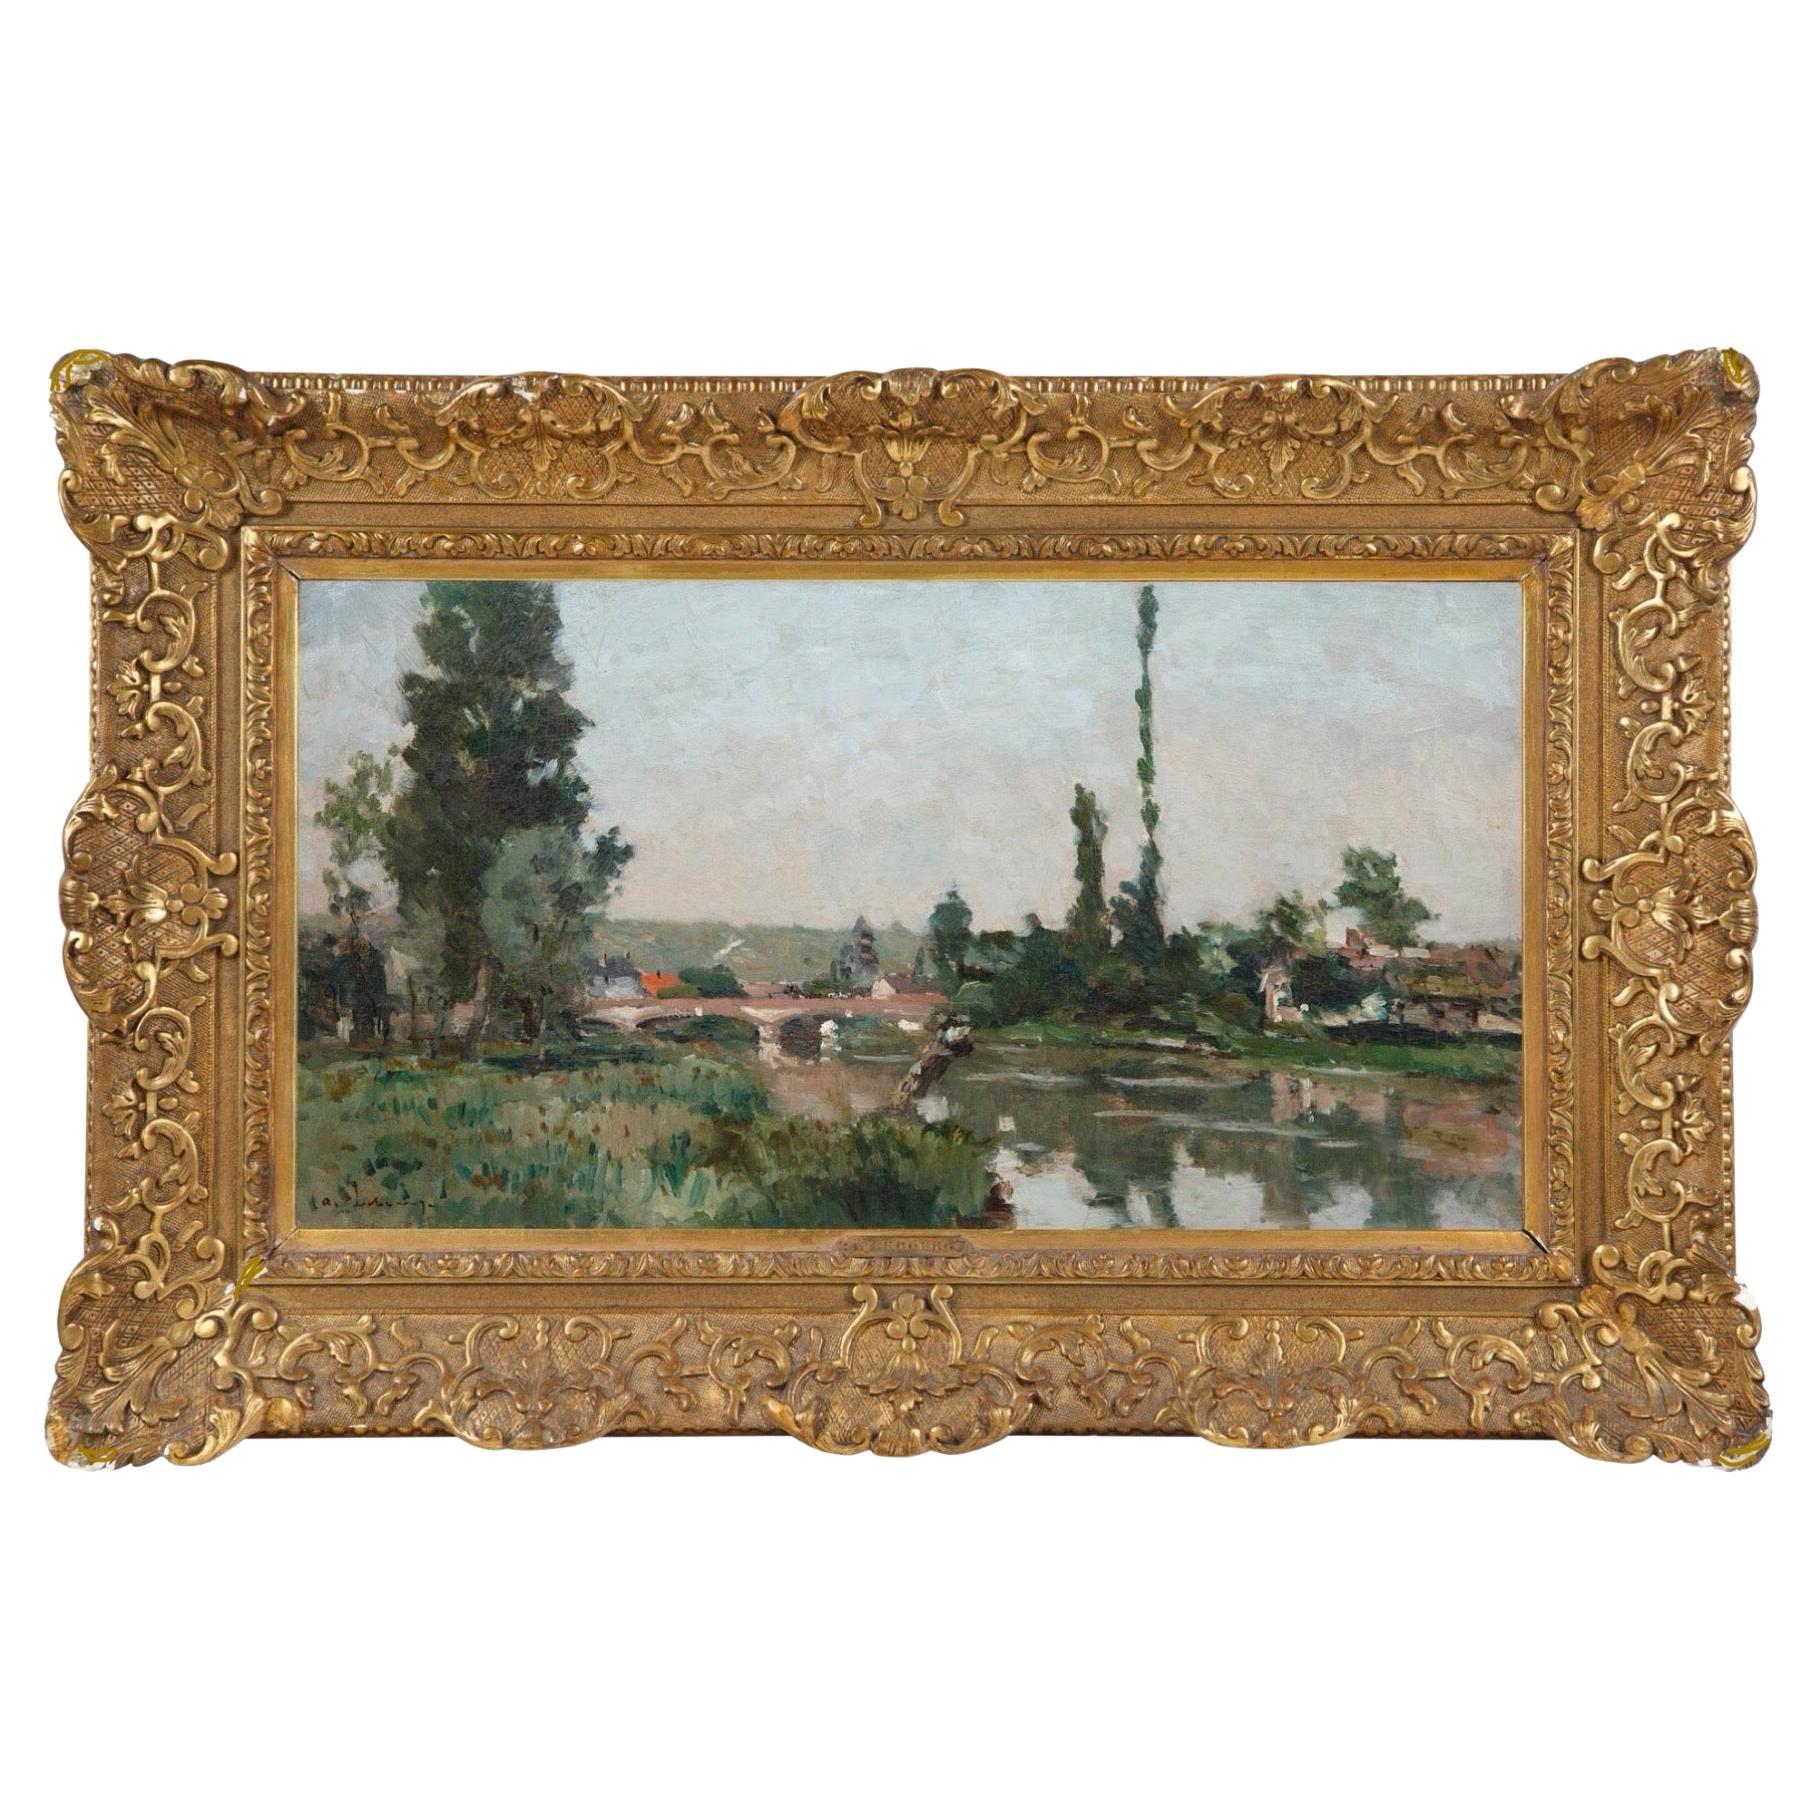 Albert Lebourg (français 1849-1928) 
Le long de la Seine, vers 1885
Huile sur toile
Dimensions : Toile 15.5 x 28 pouces ; Encadré 24.25 x 37.75 pouces
signé en bas à gauche 